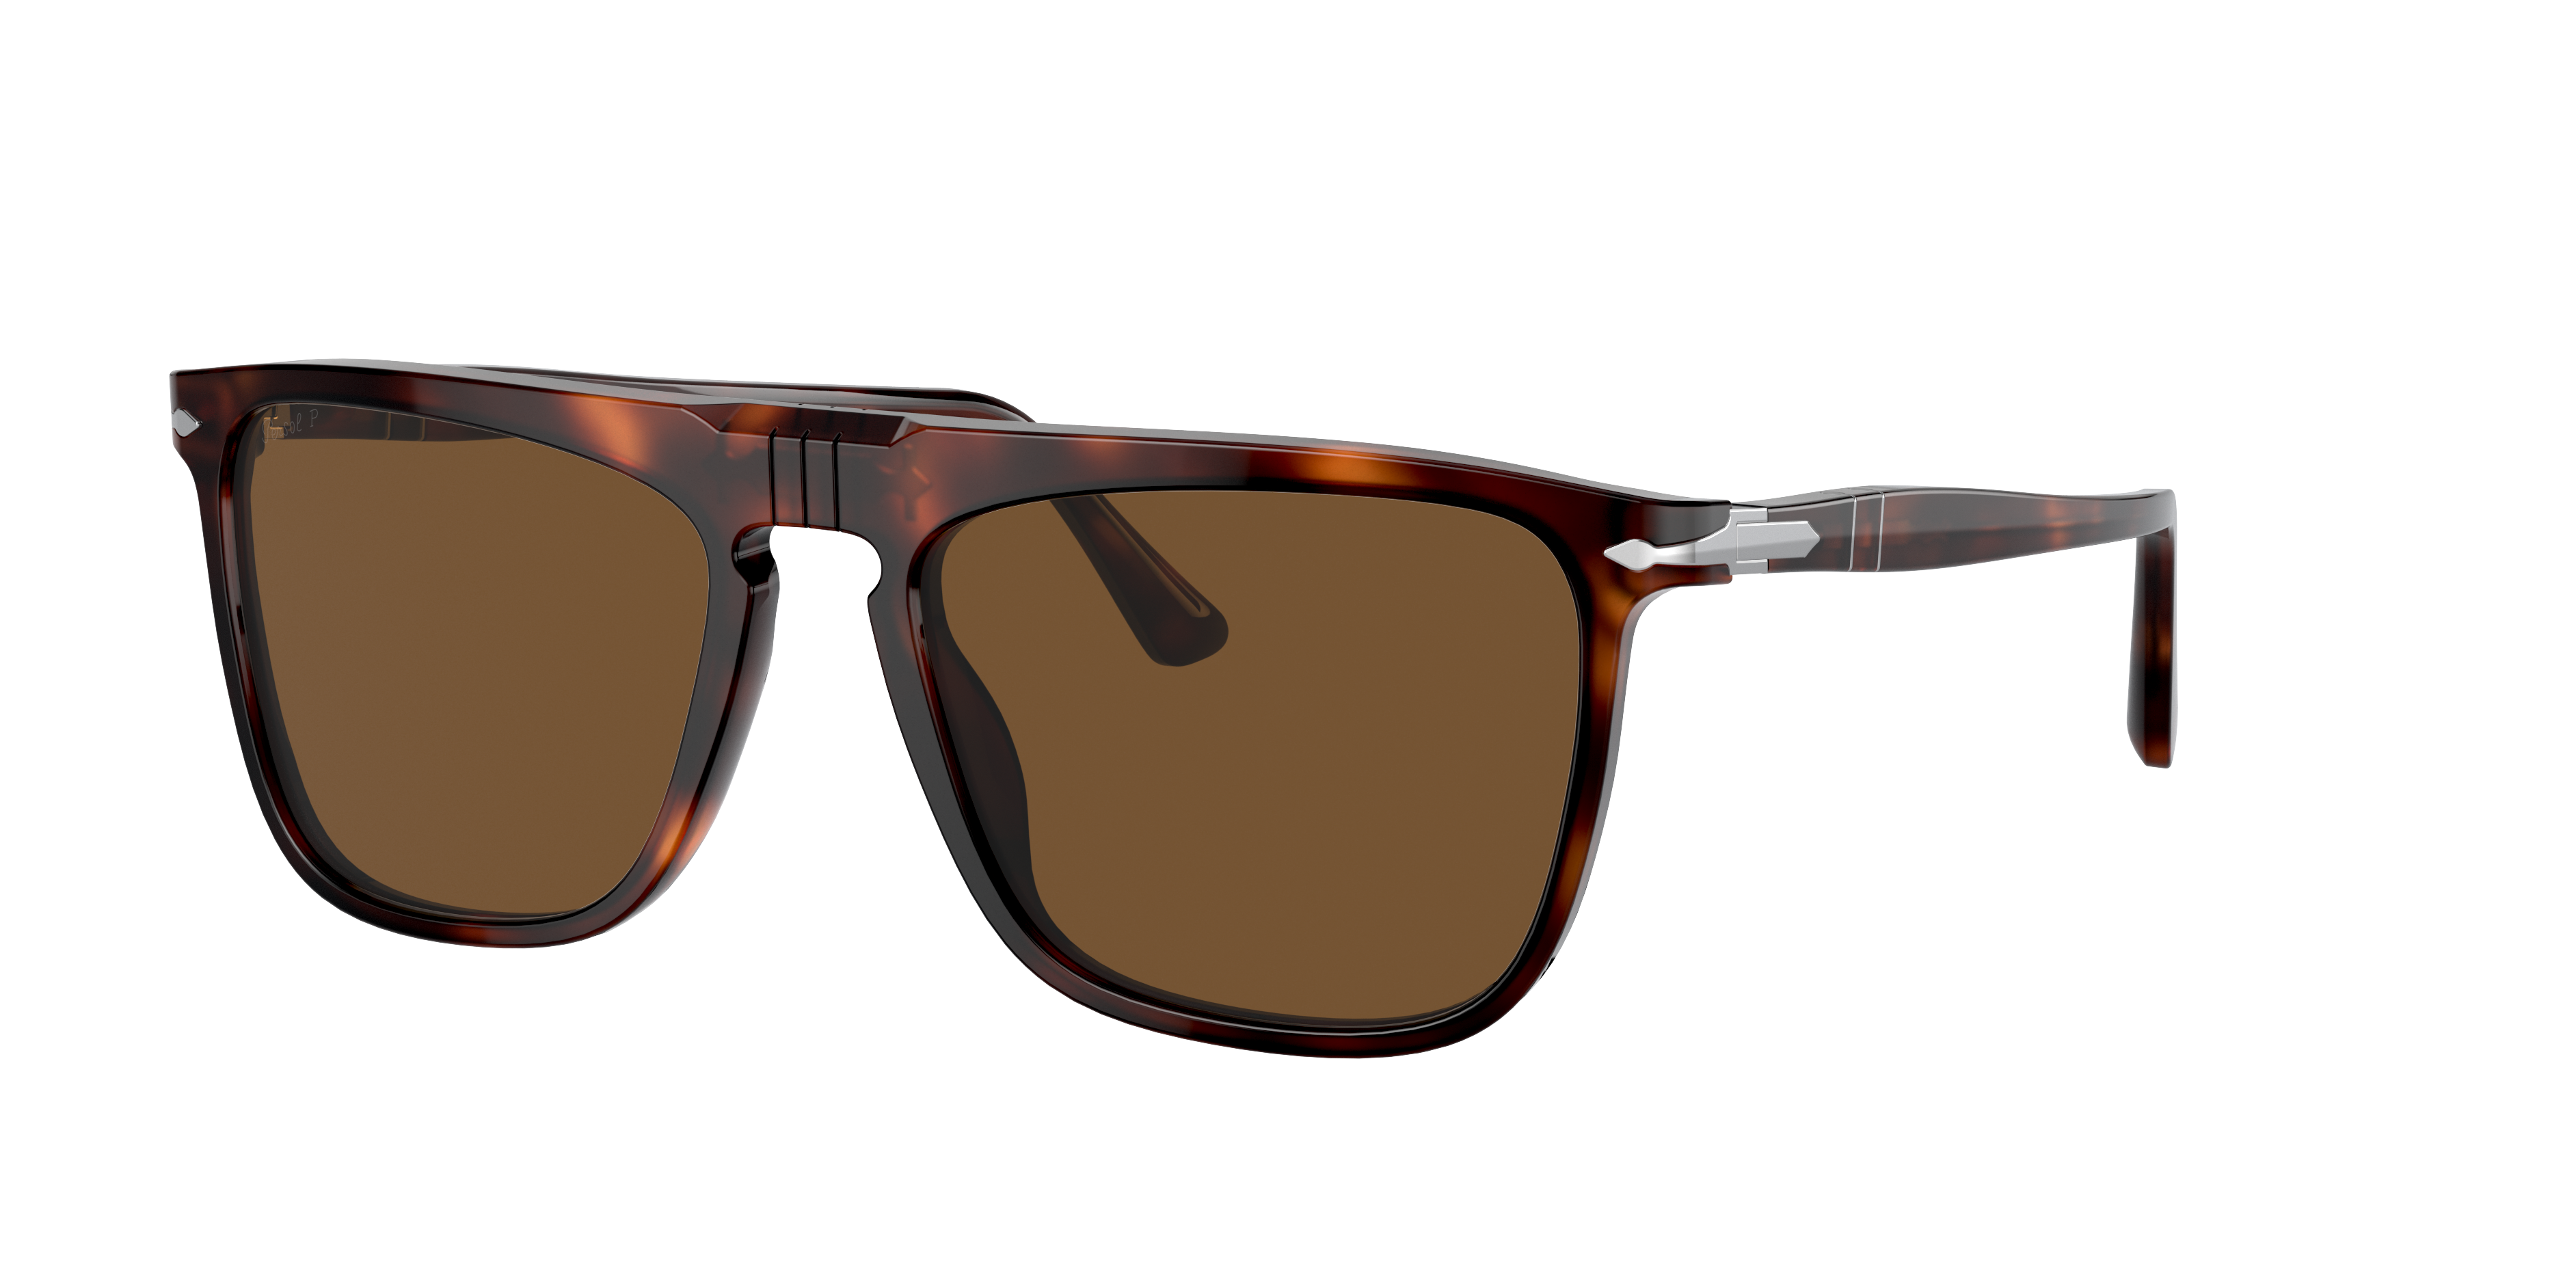 Sunglass Hut® Online Store | Sunglasses for Women, Men & Kids